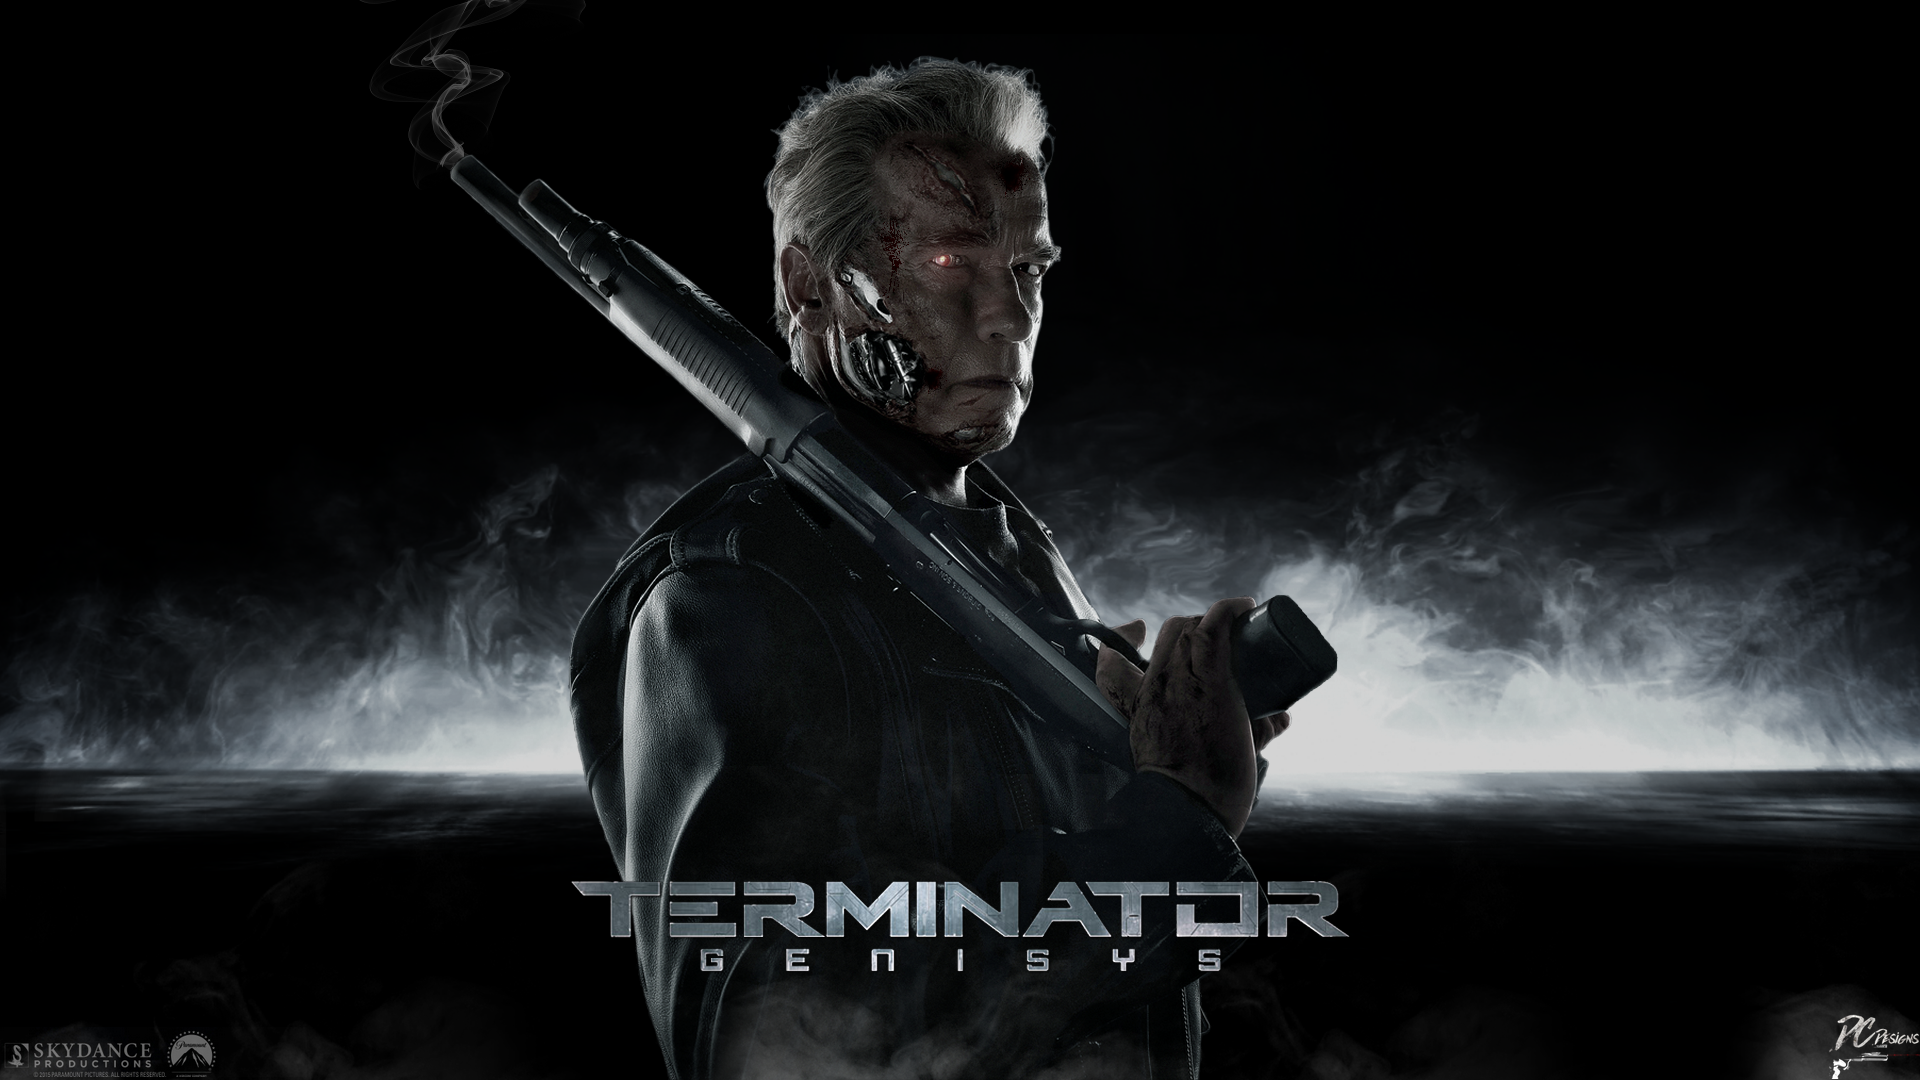 Terminator Genisys Computer Wallpapers, Desktop Backgrounds ...